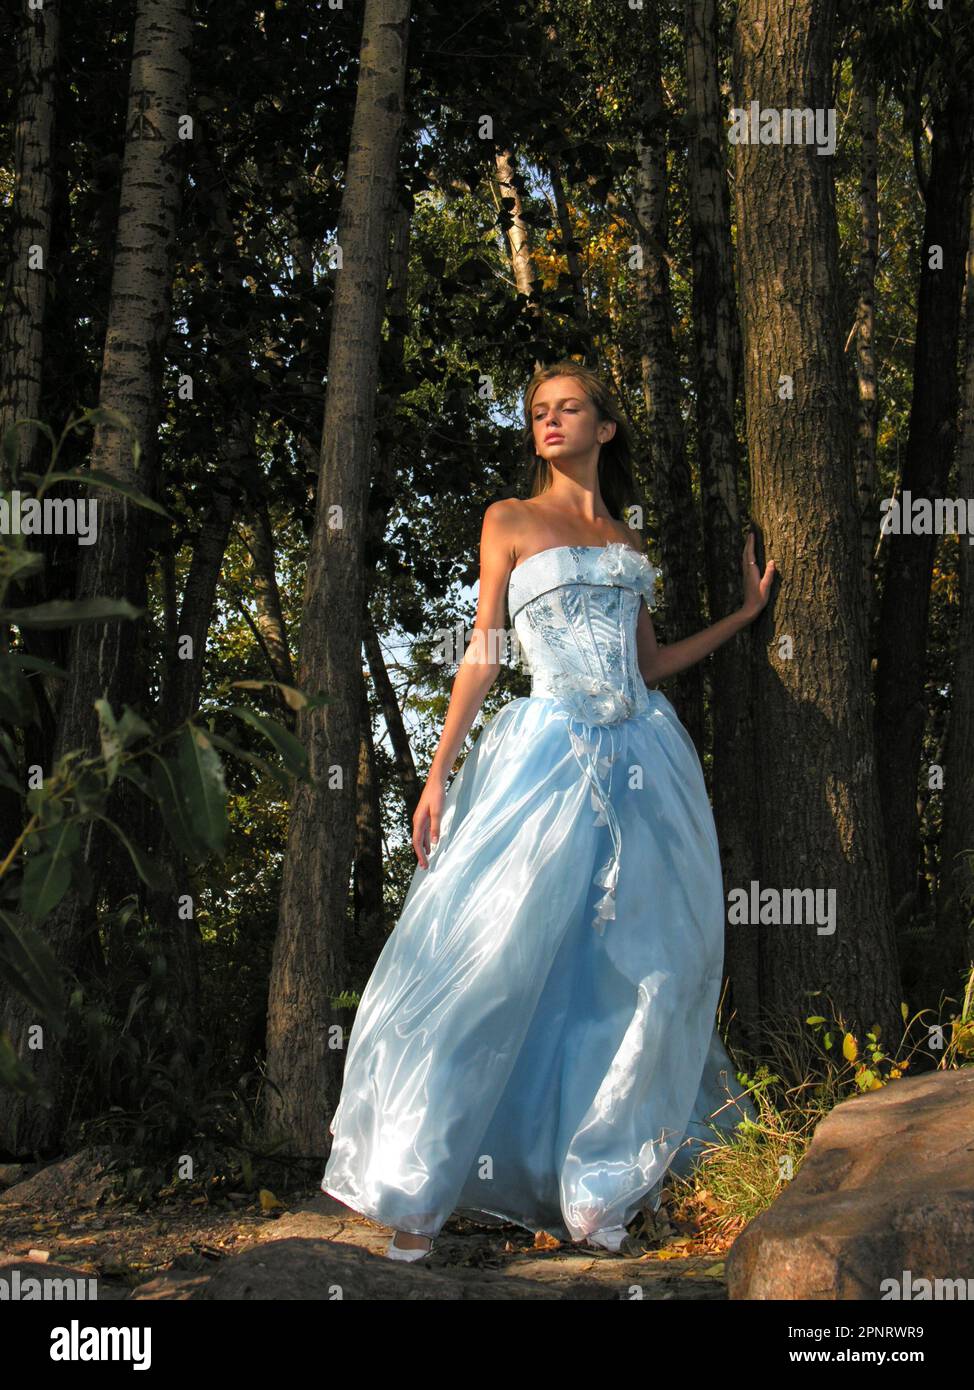 Ein Mädchen in blauem Kleid, das morgens im wilden Wald spaziert Stockfoto